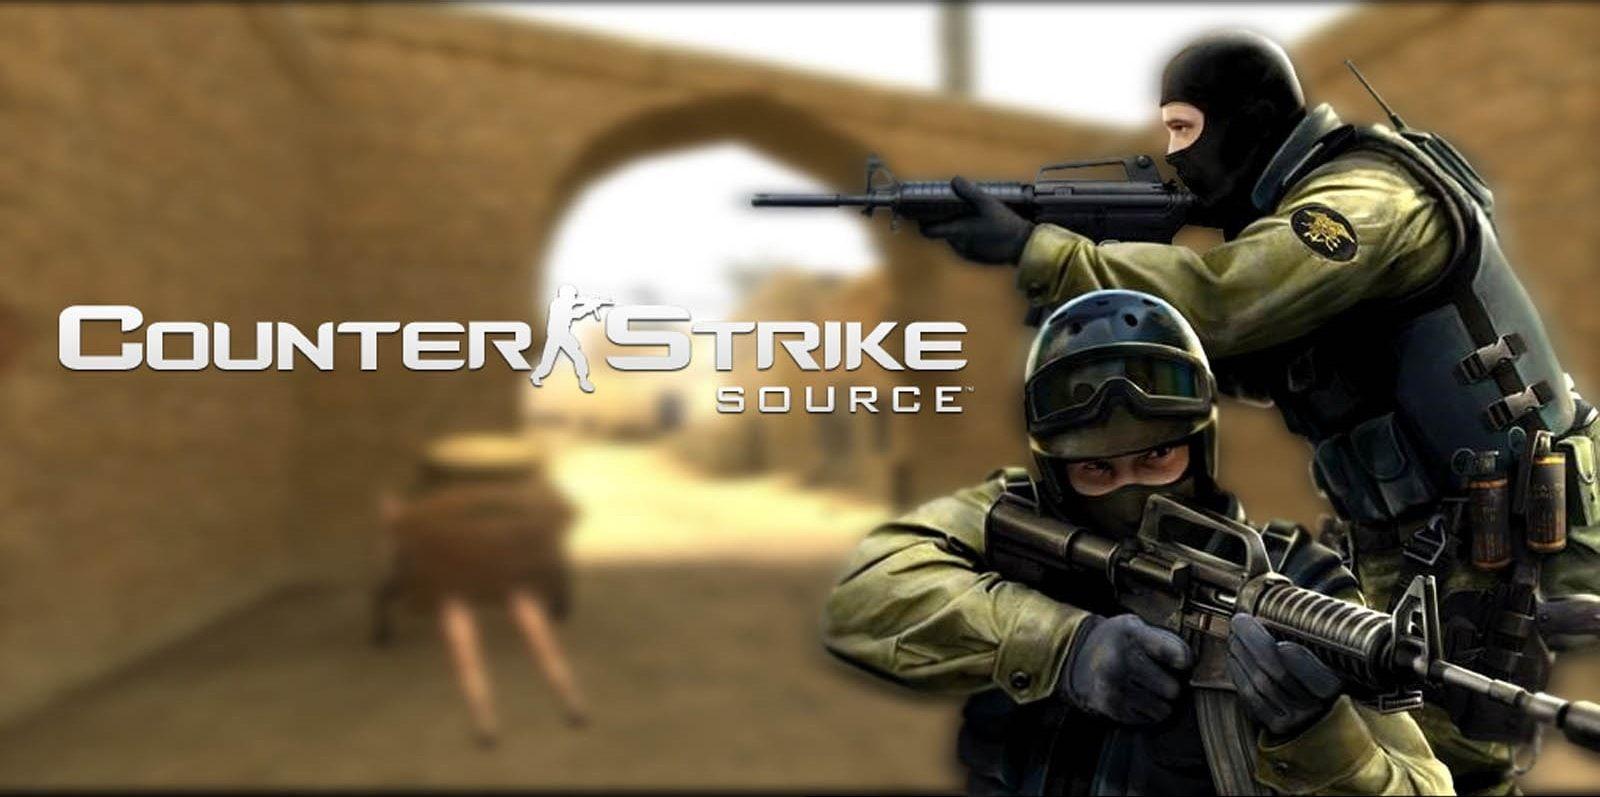 Counter Strike Wallpaper For Desktop